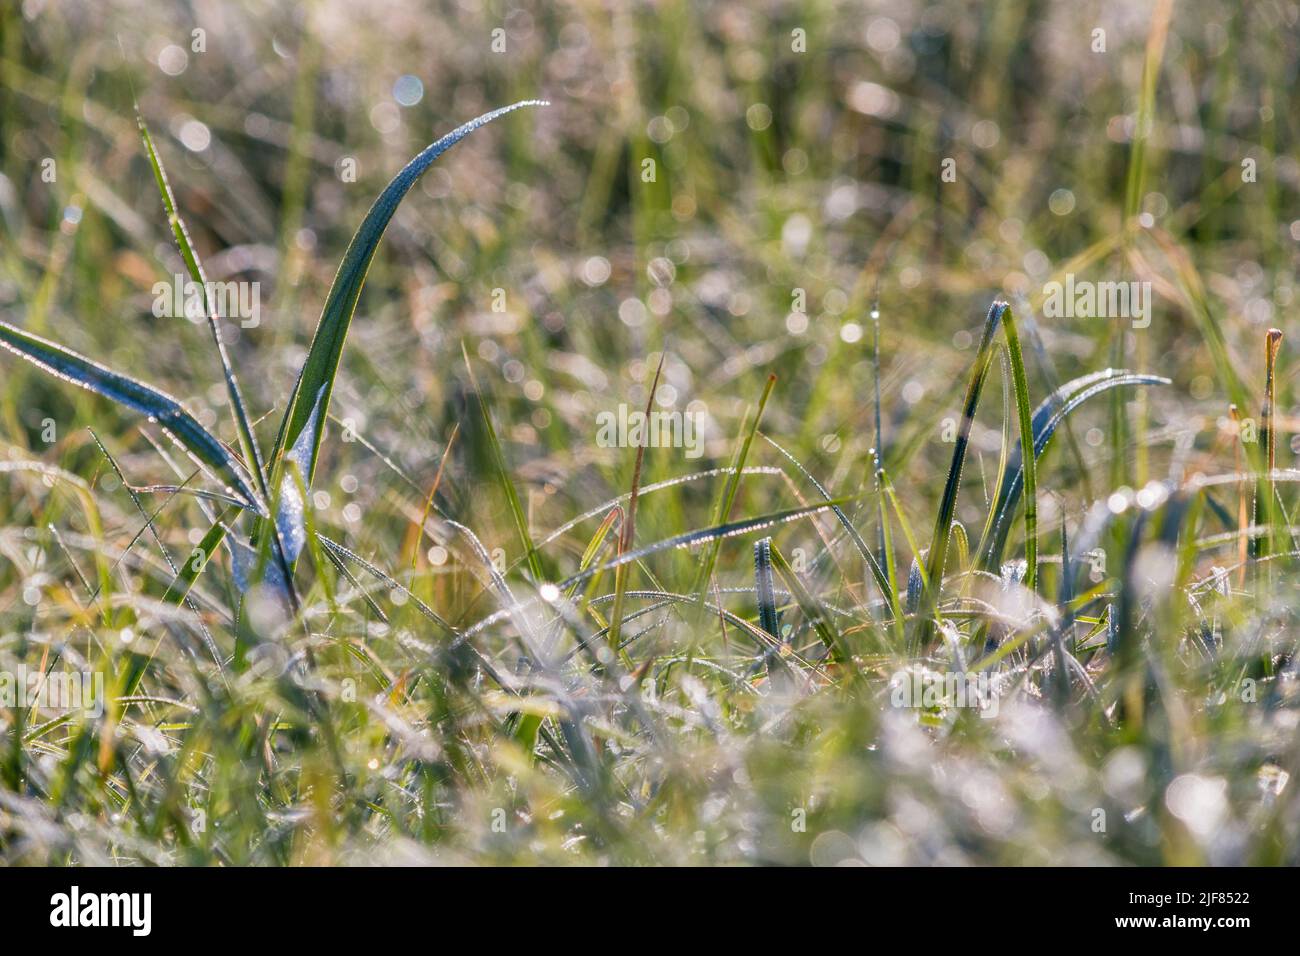 Wassertropfen vom Morgentau im Gras, Detailaufnahme, gocce d'acqua dalla rugiada mattutina in erba, primo piano Foto Stock